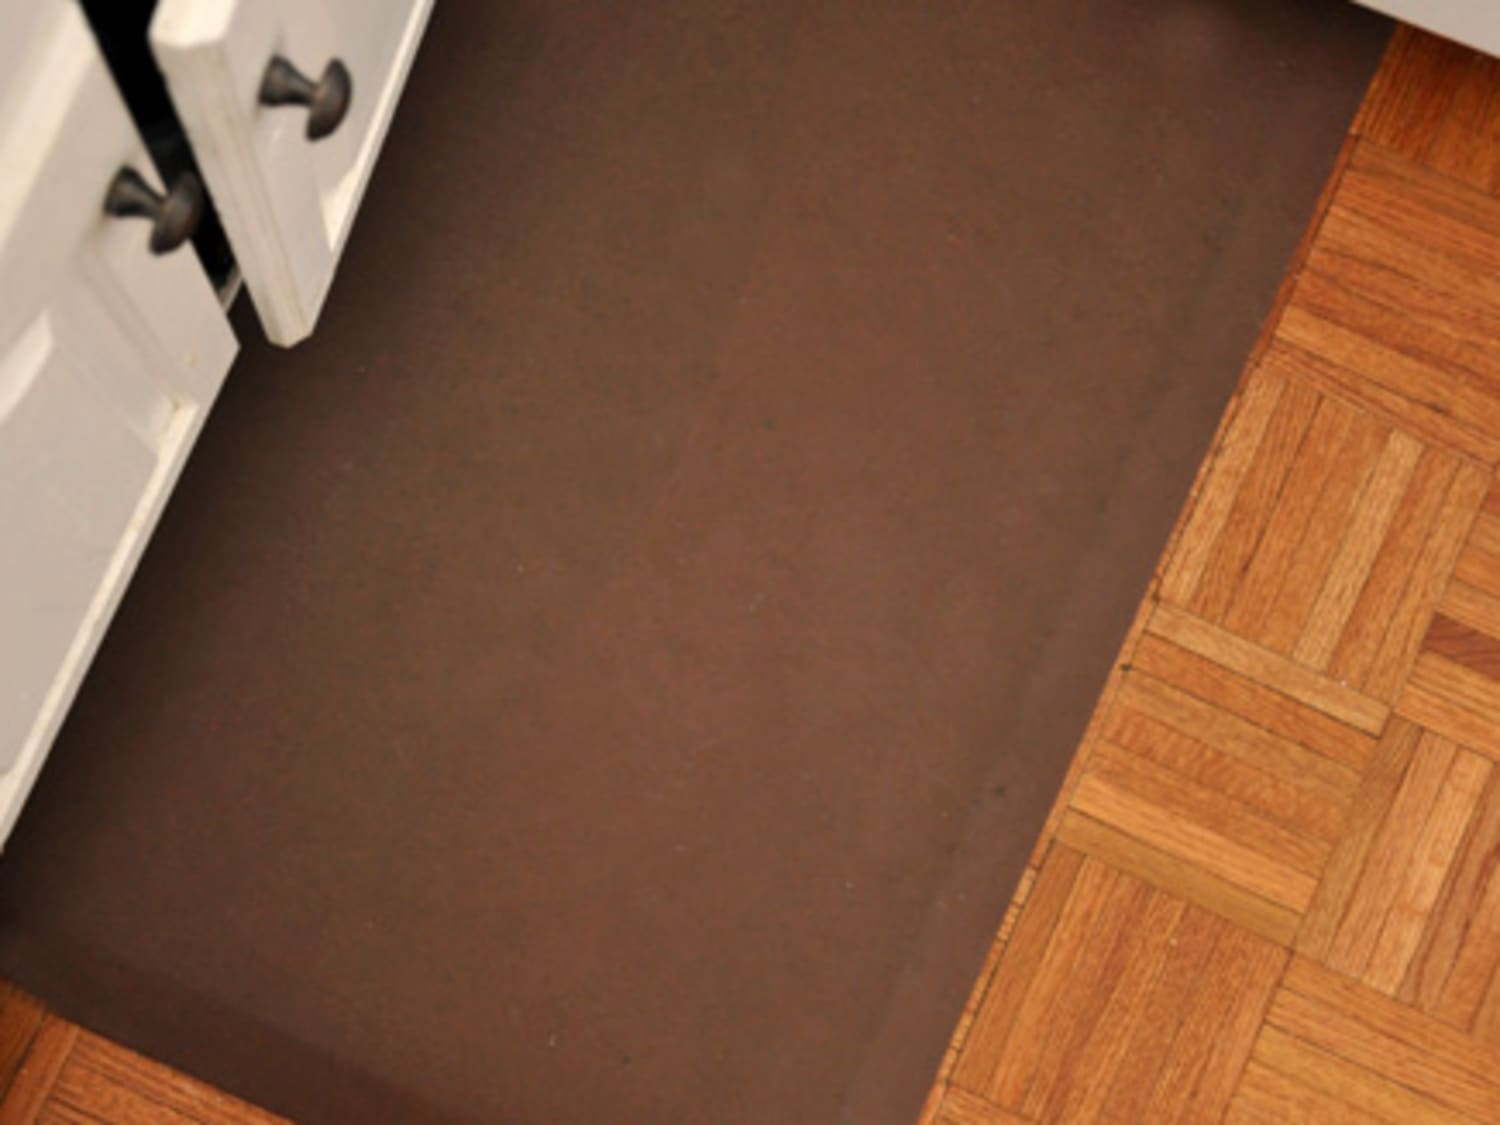 GelPro Gel-Filled Anti-Fatigue Floor Mats